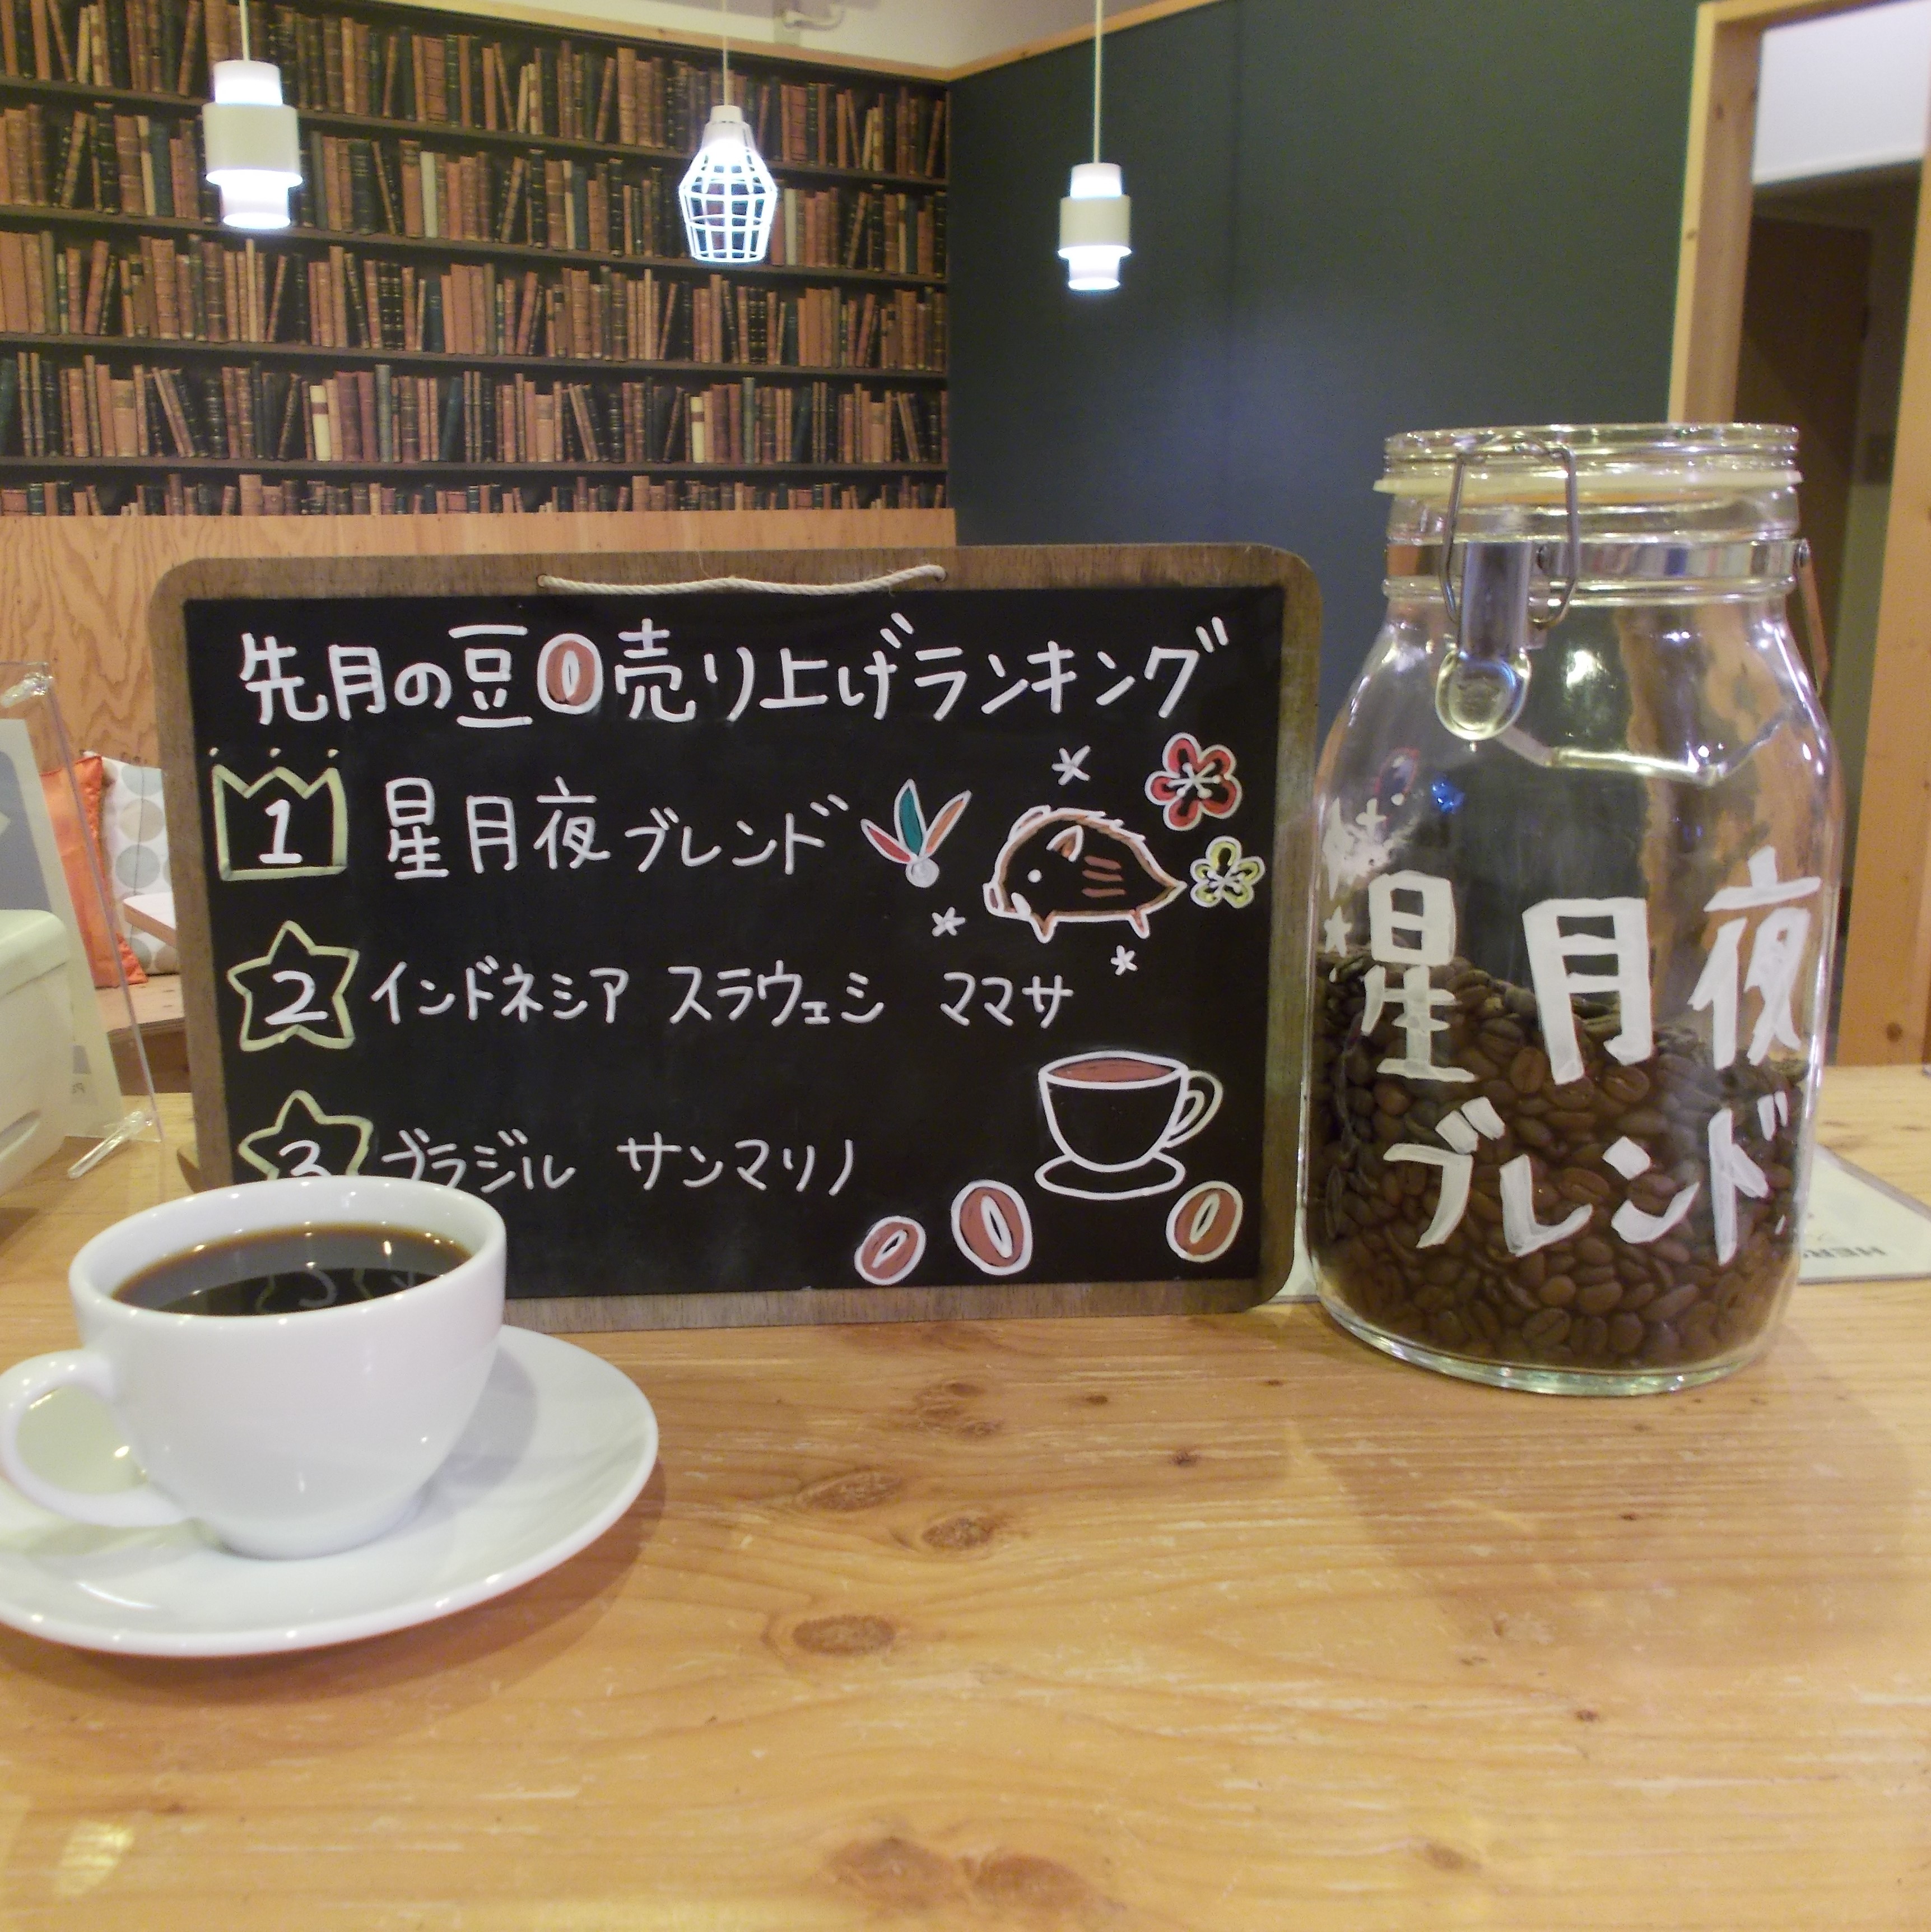 【先月のスペシャルティコーヒー人気ランキング】